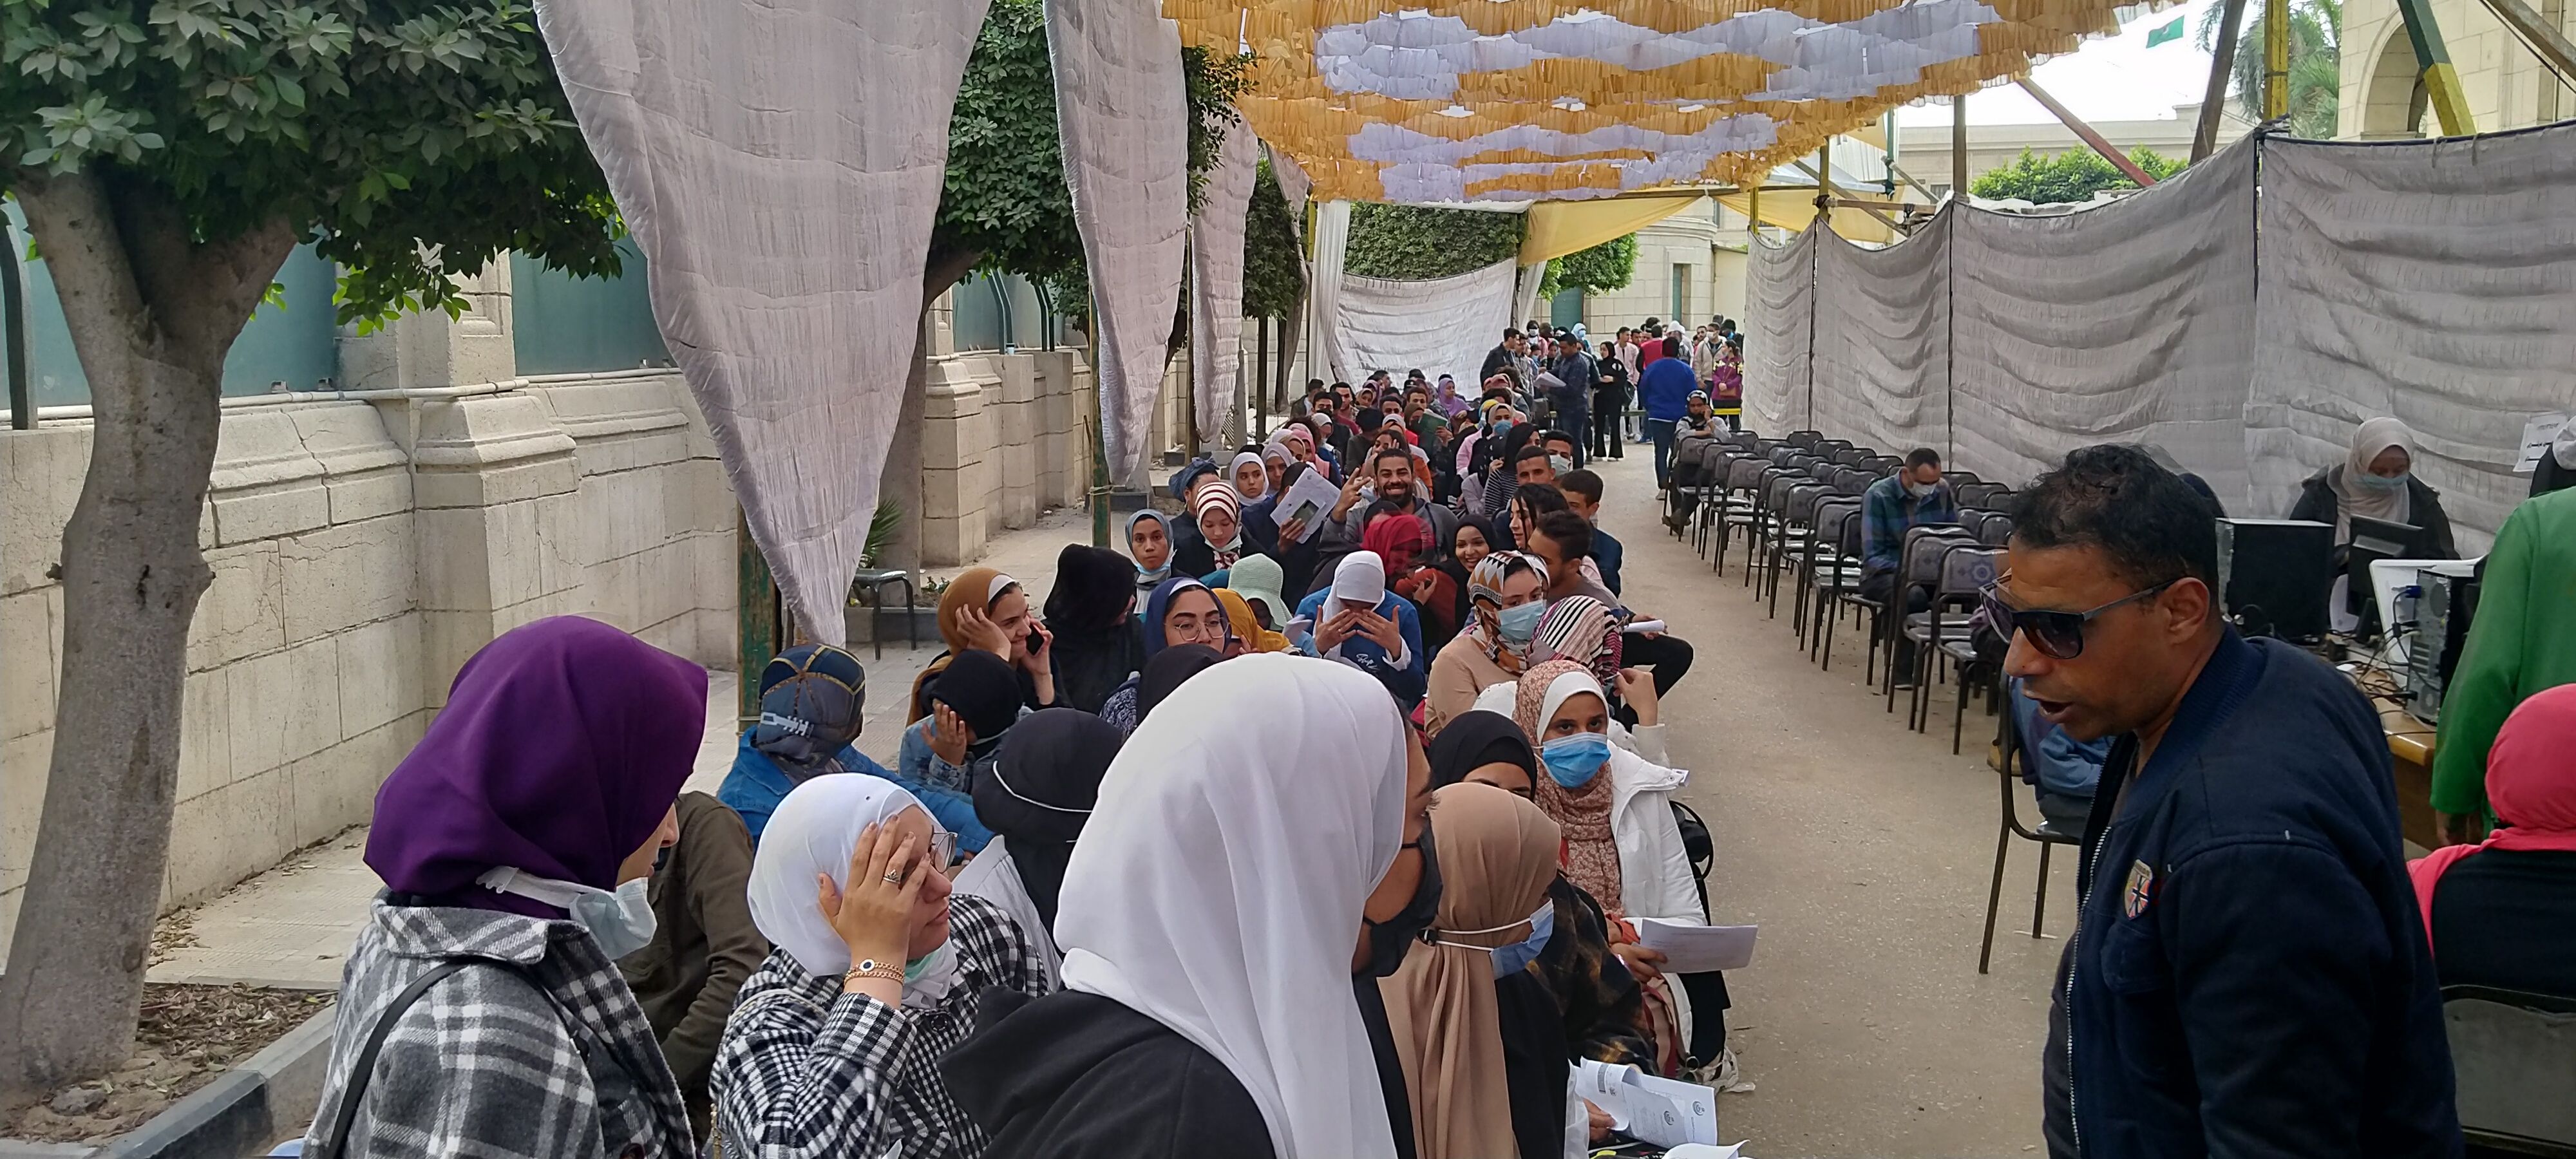 إقبال كثيف لطلاب جامعة القاهرة على نقطة التطعيم المركزية للحصول على لقاح كورونا